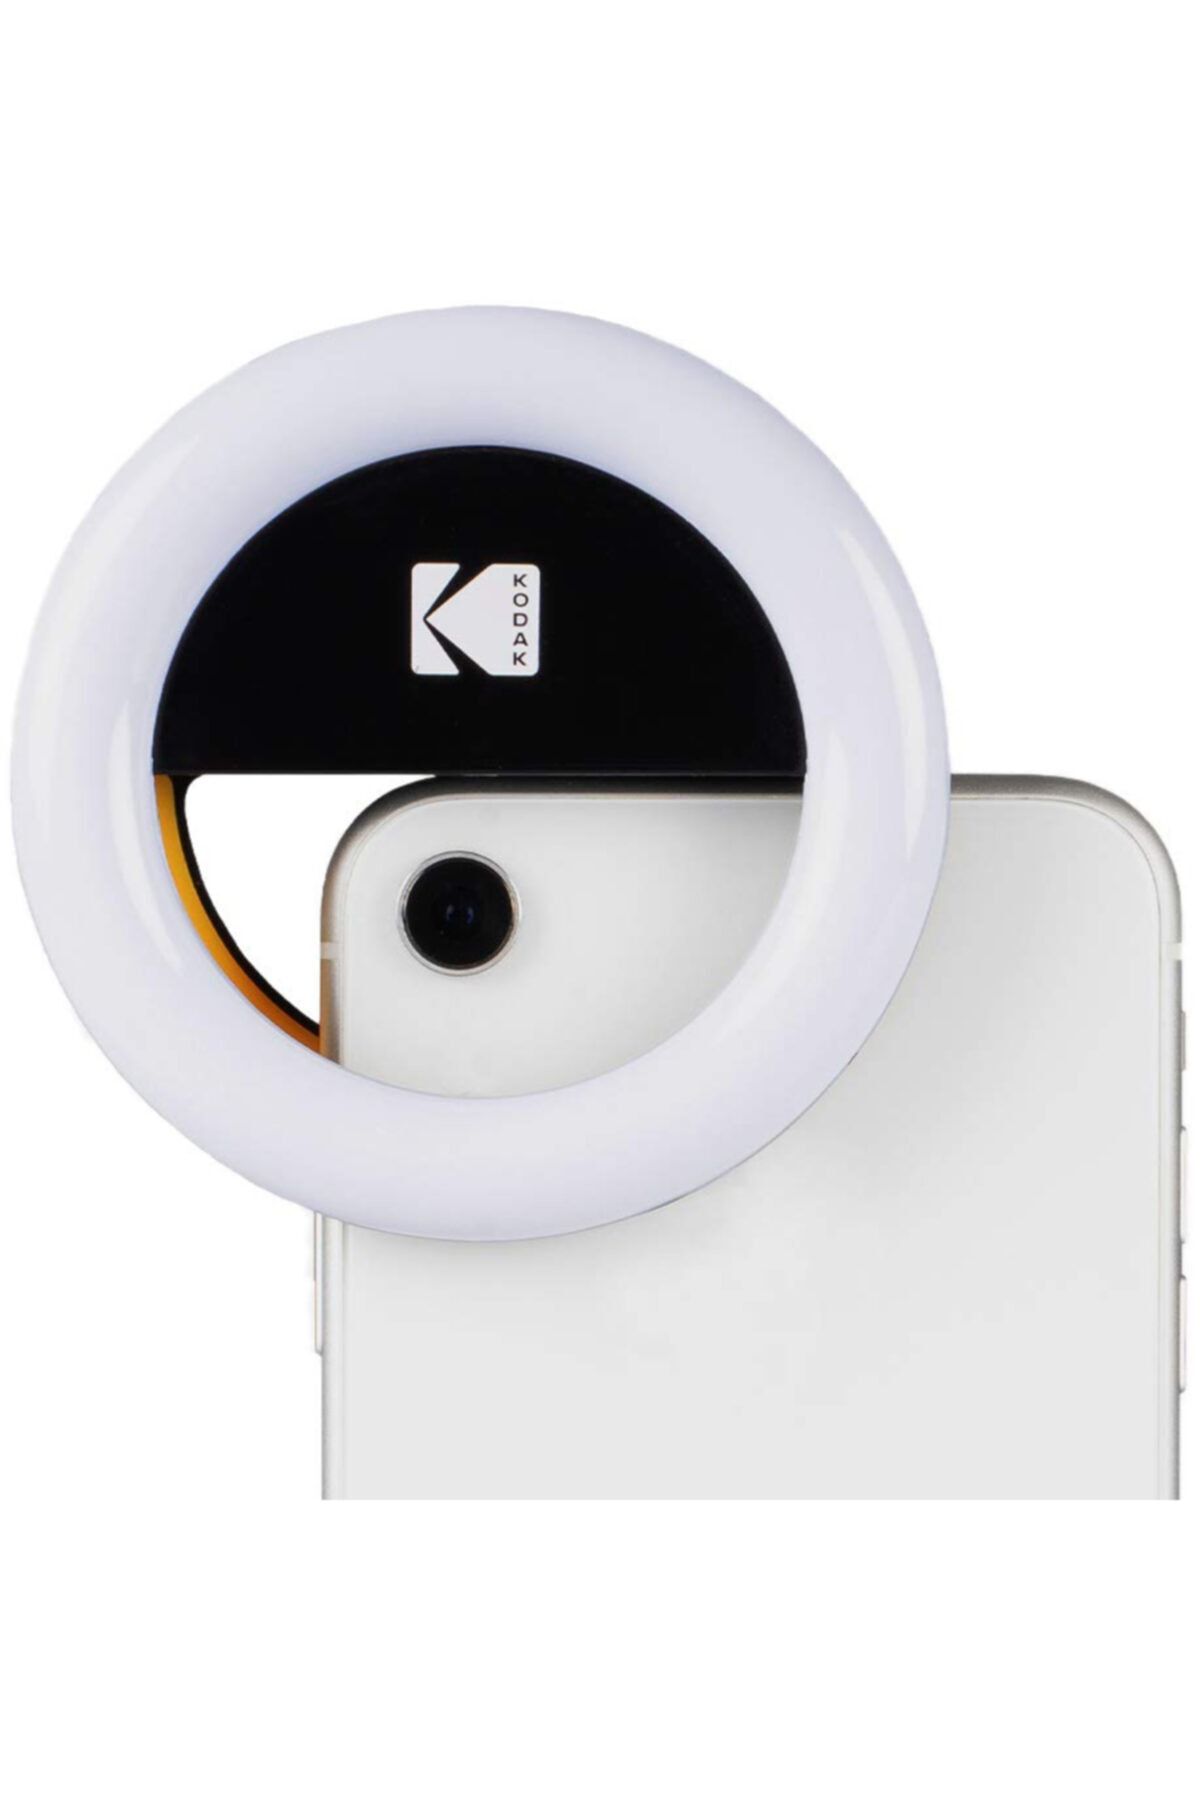 Kodak Akıllı Telefon Portre Işığı